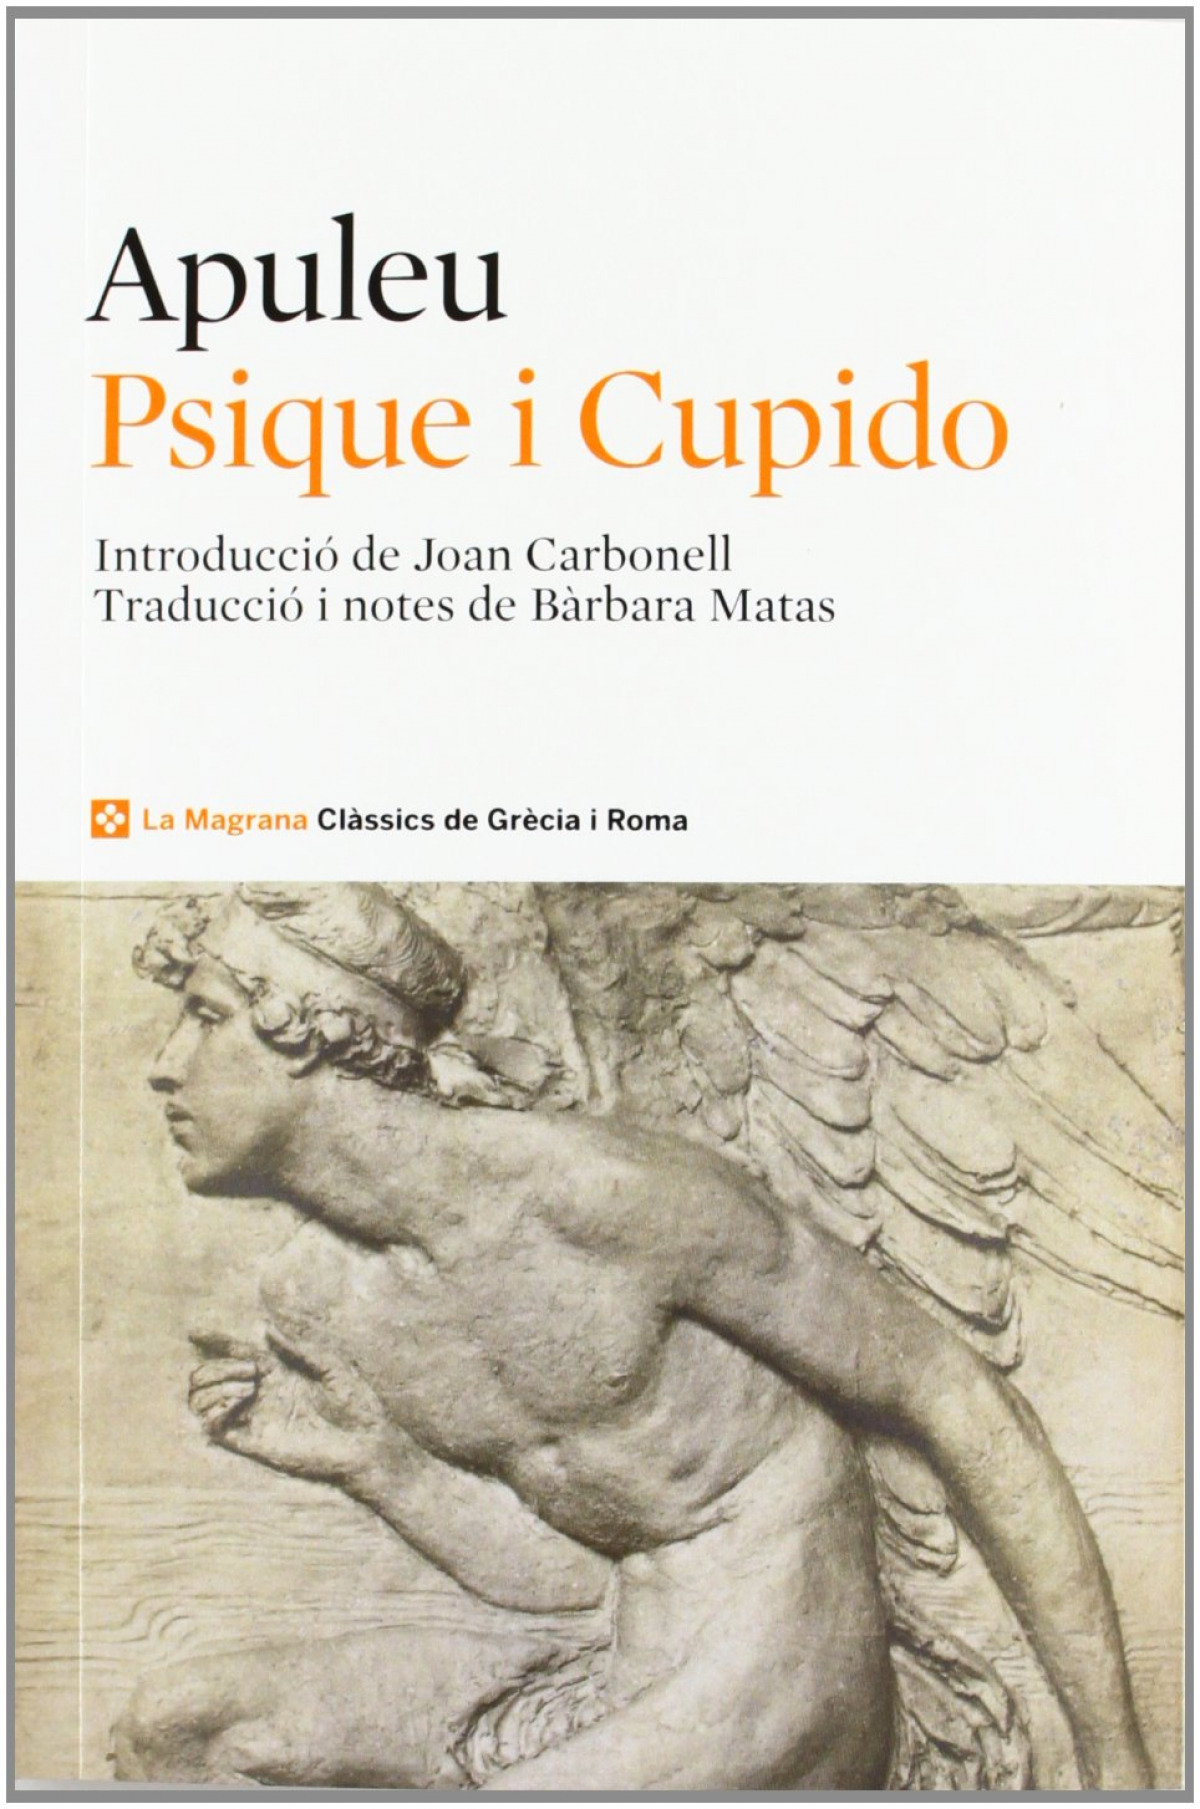 Psique i cupido - Apuleu / Matas, Barbara (traduccio)